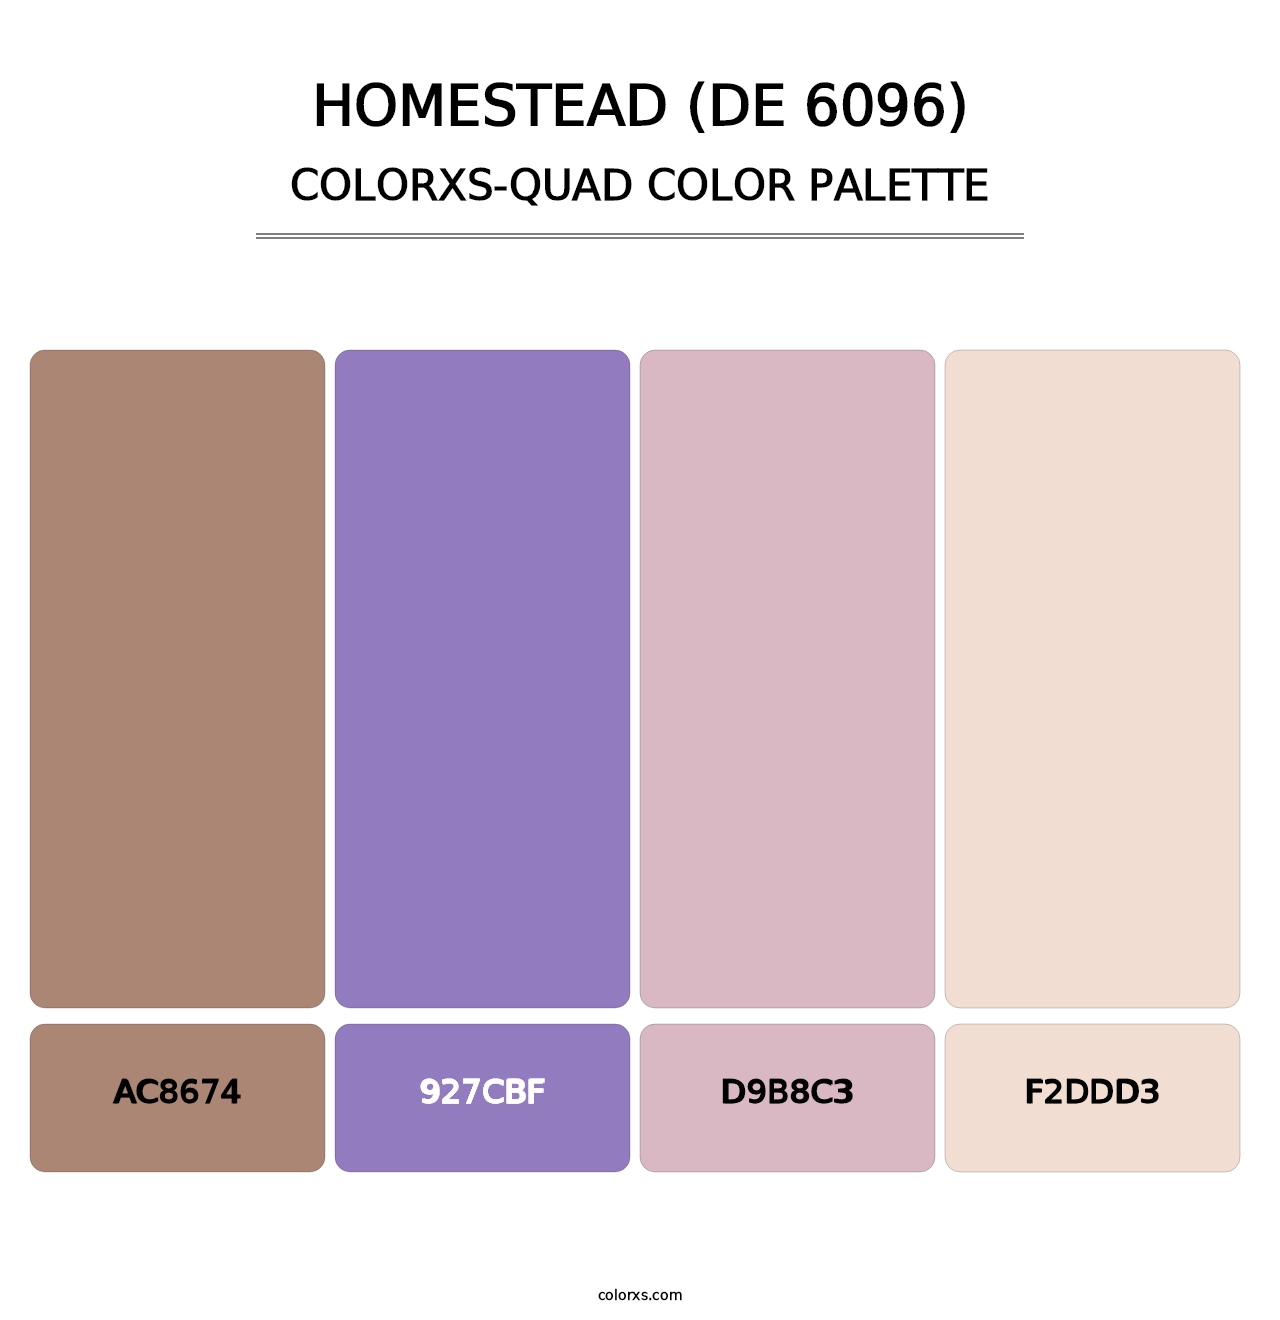 Homestead (DE 6096) - Colorxs Quad Palette